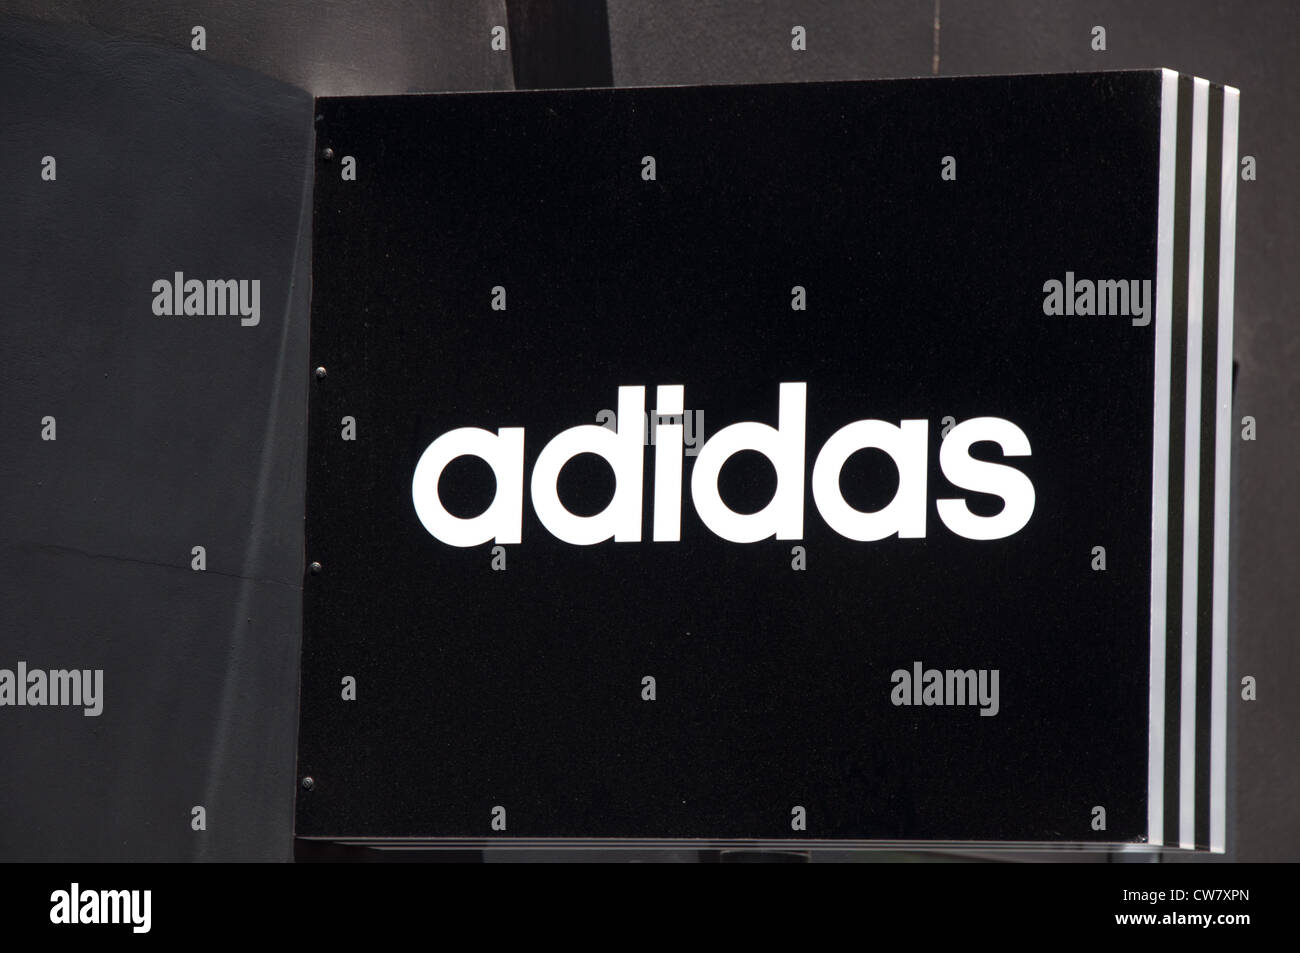 Adidas firmare in un negozio in Heraklion, la capitale dell'isola di Creta in Grecia in agosto 6,2012. Foto Stock